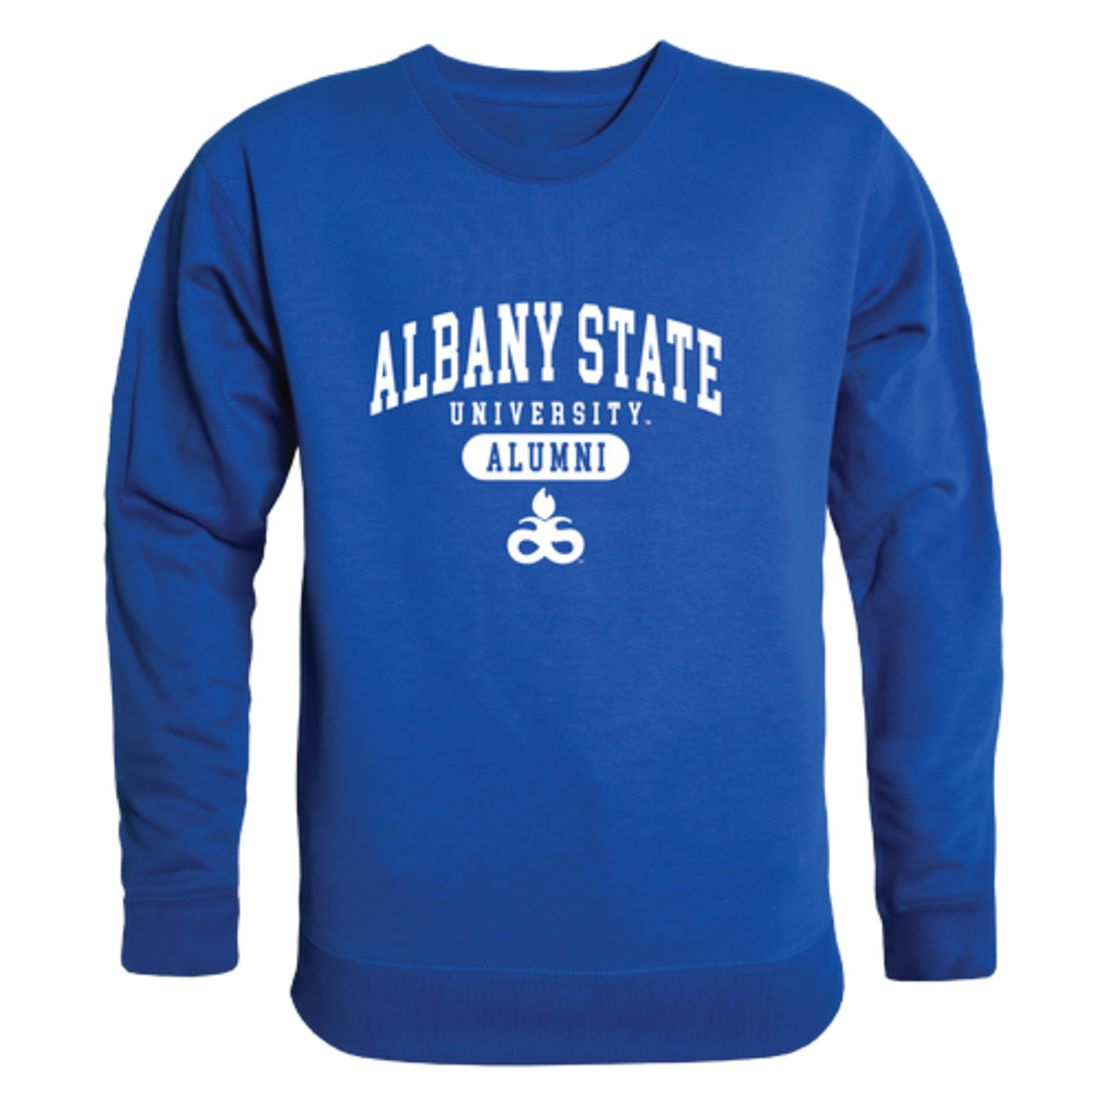 Albany State University Golden Rams Alumni Crewneck Sweatshirt